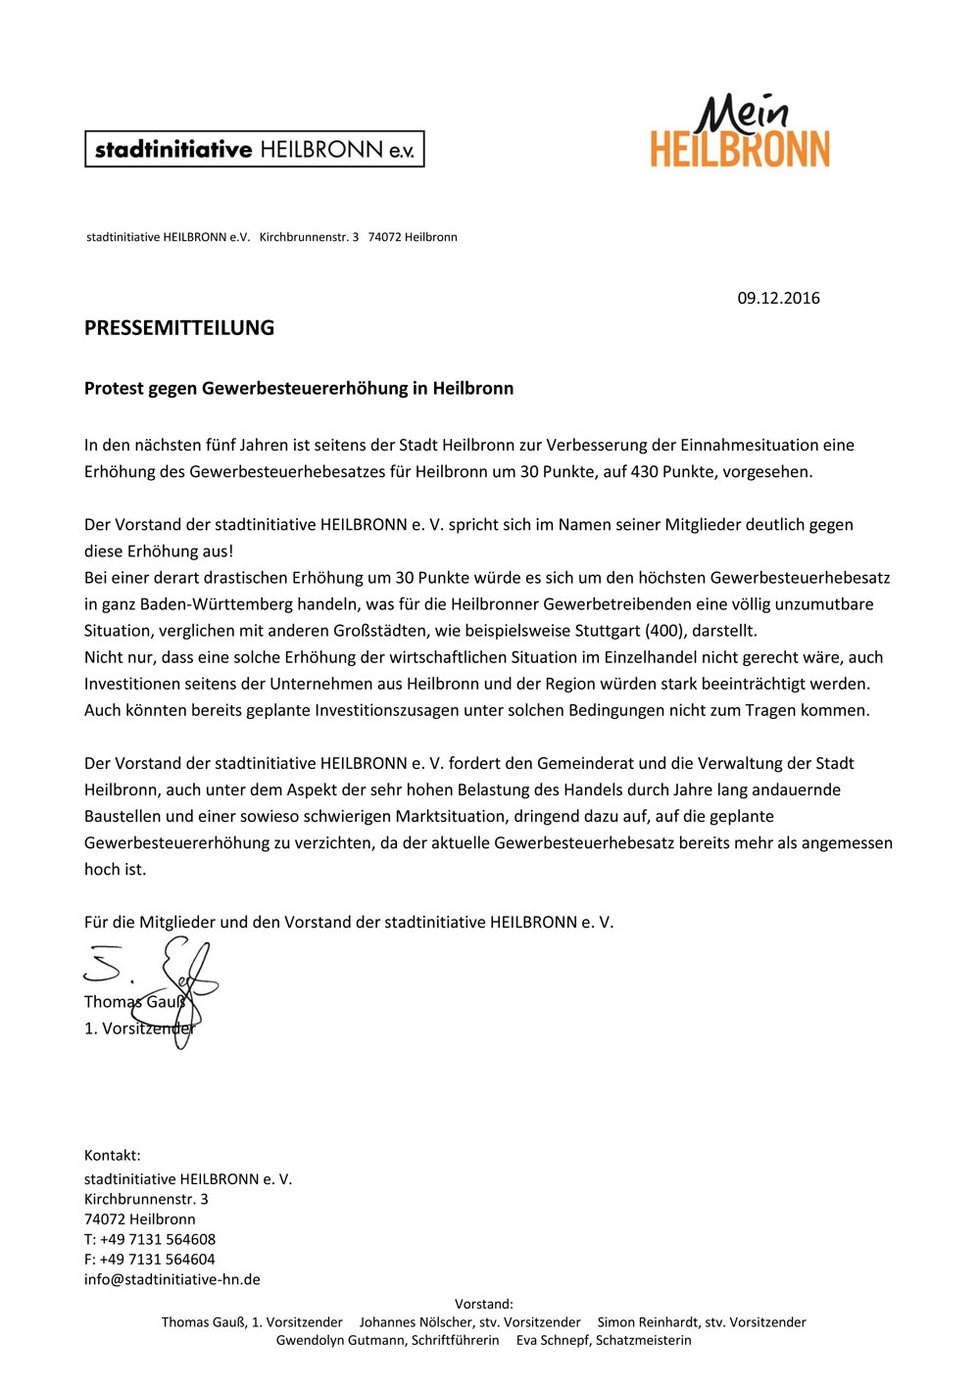 Pressemitteilung Stadtinitiative Heilbronn